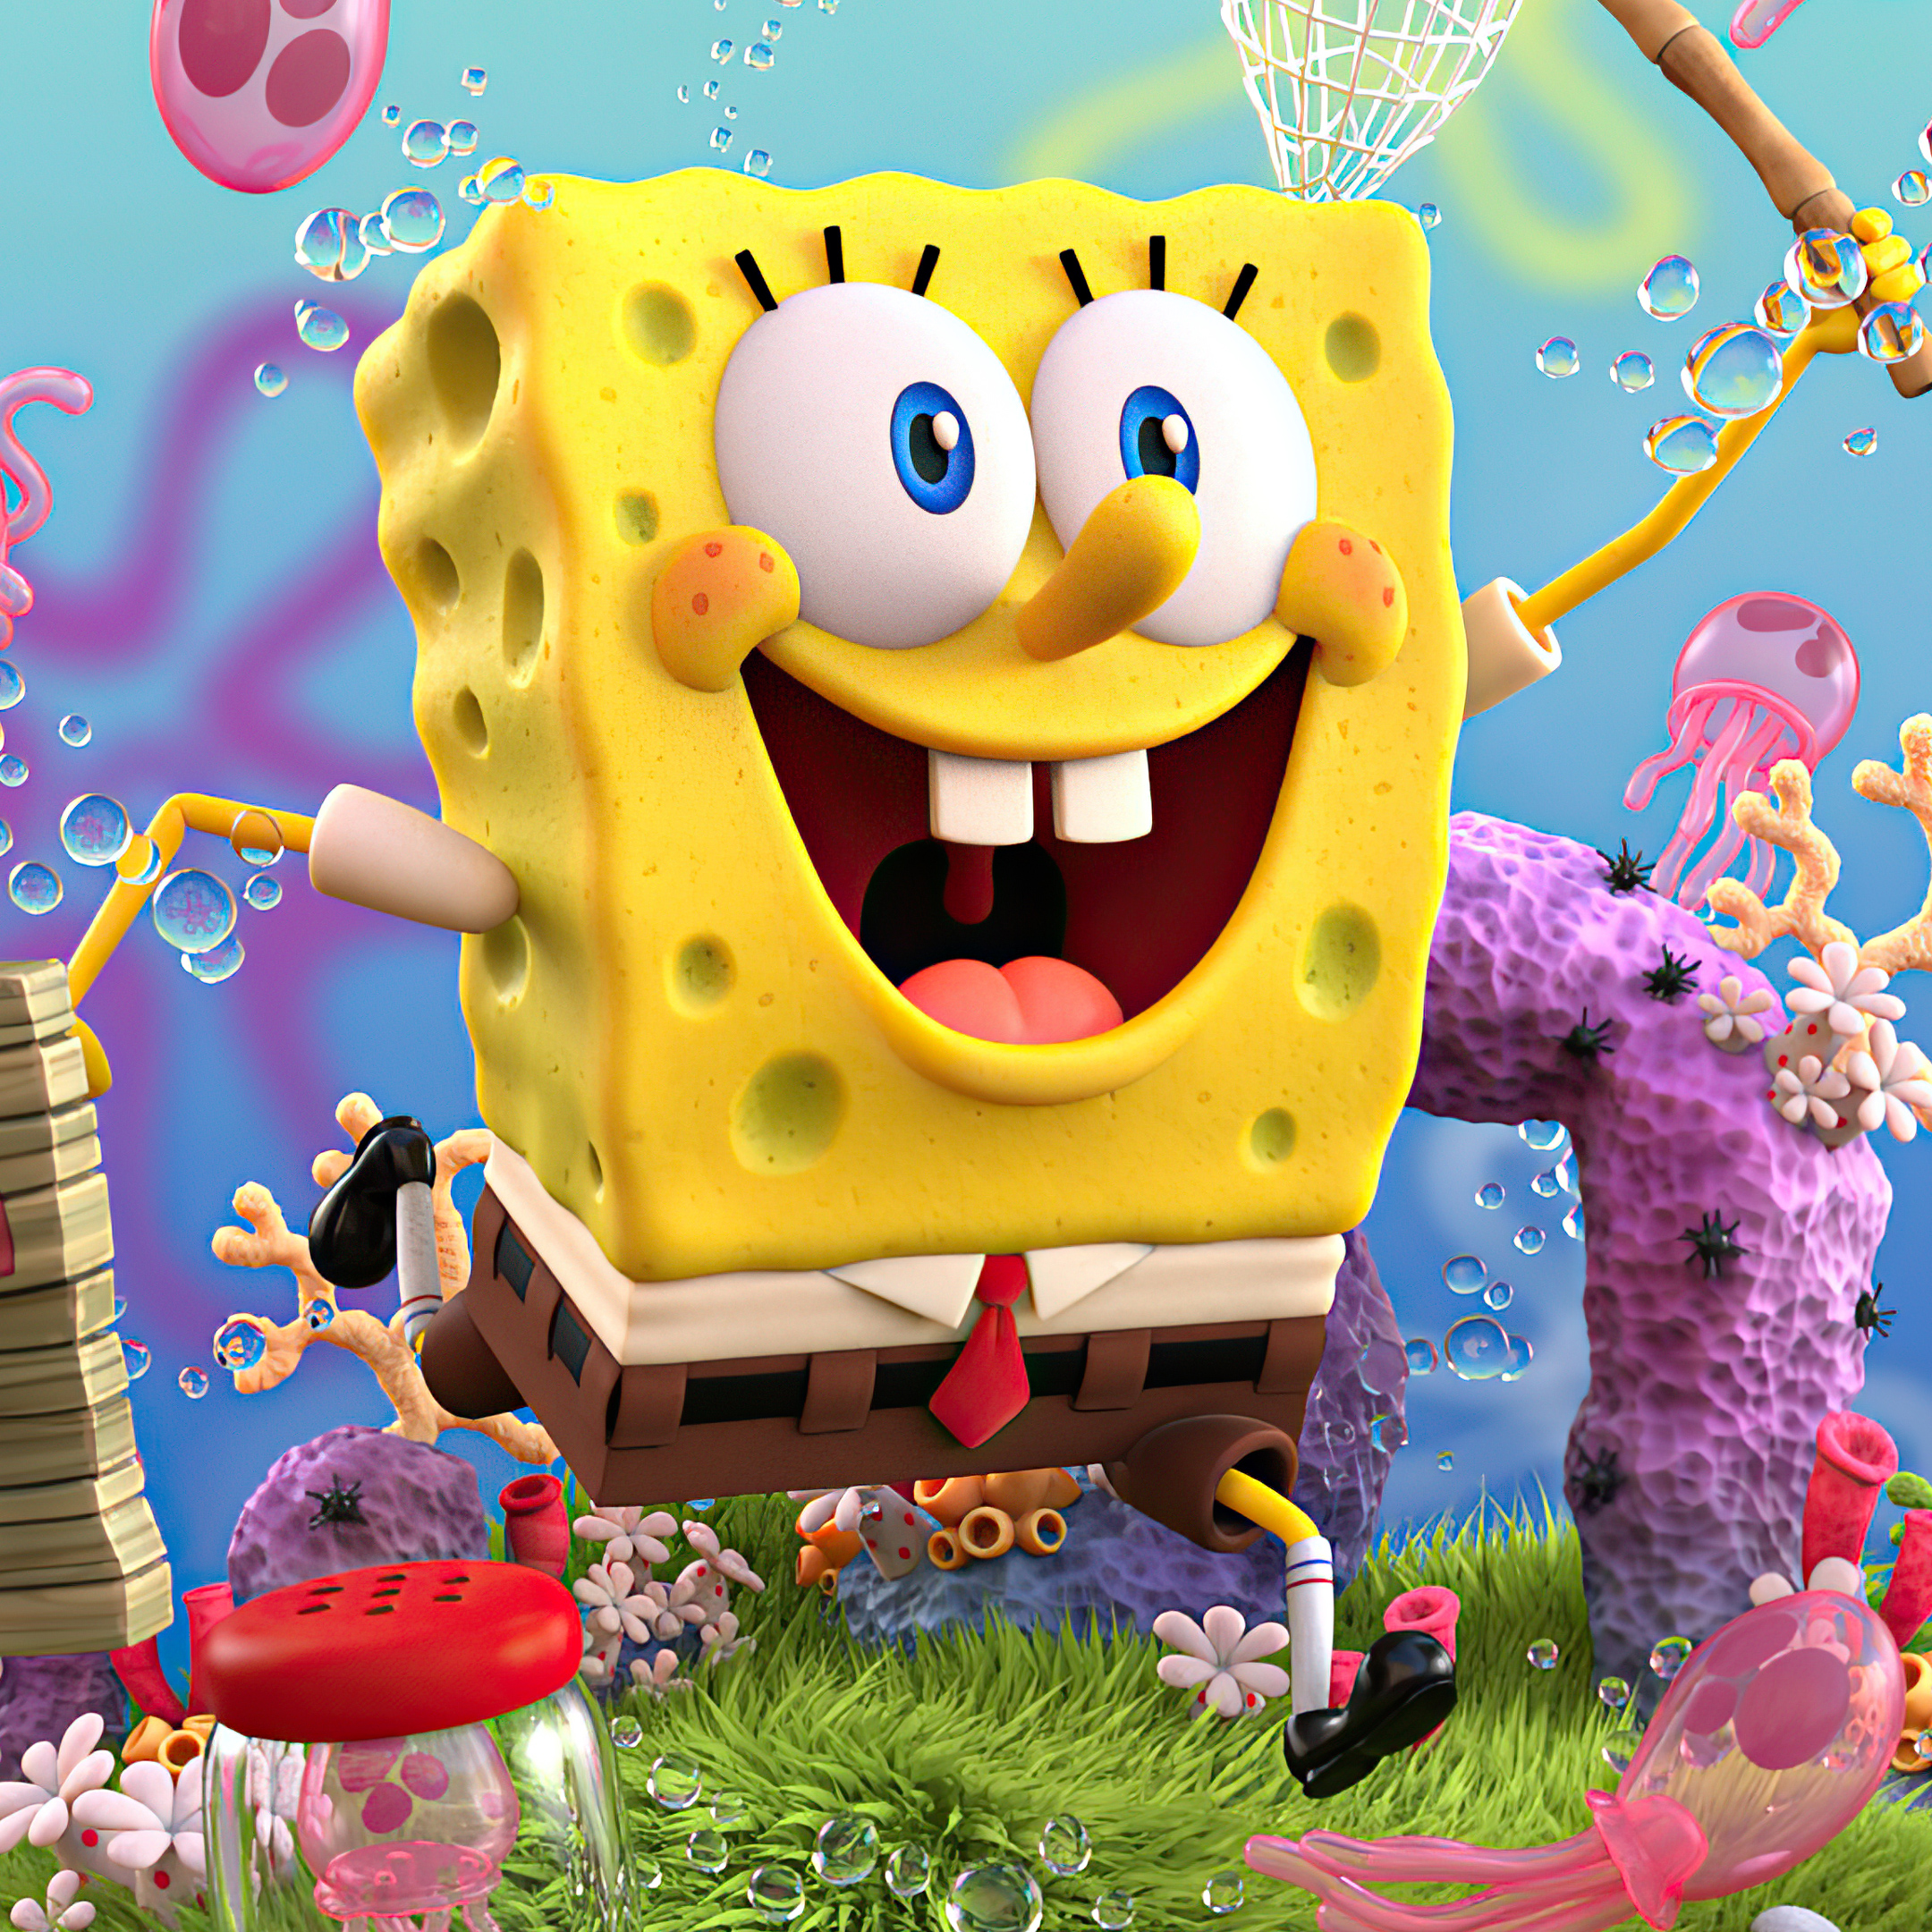 SpongeBob SquarePants — Vagina (AI Cover) cover artwork